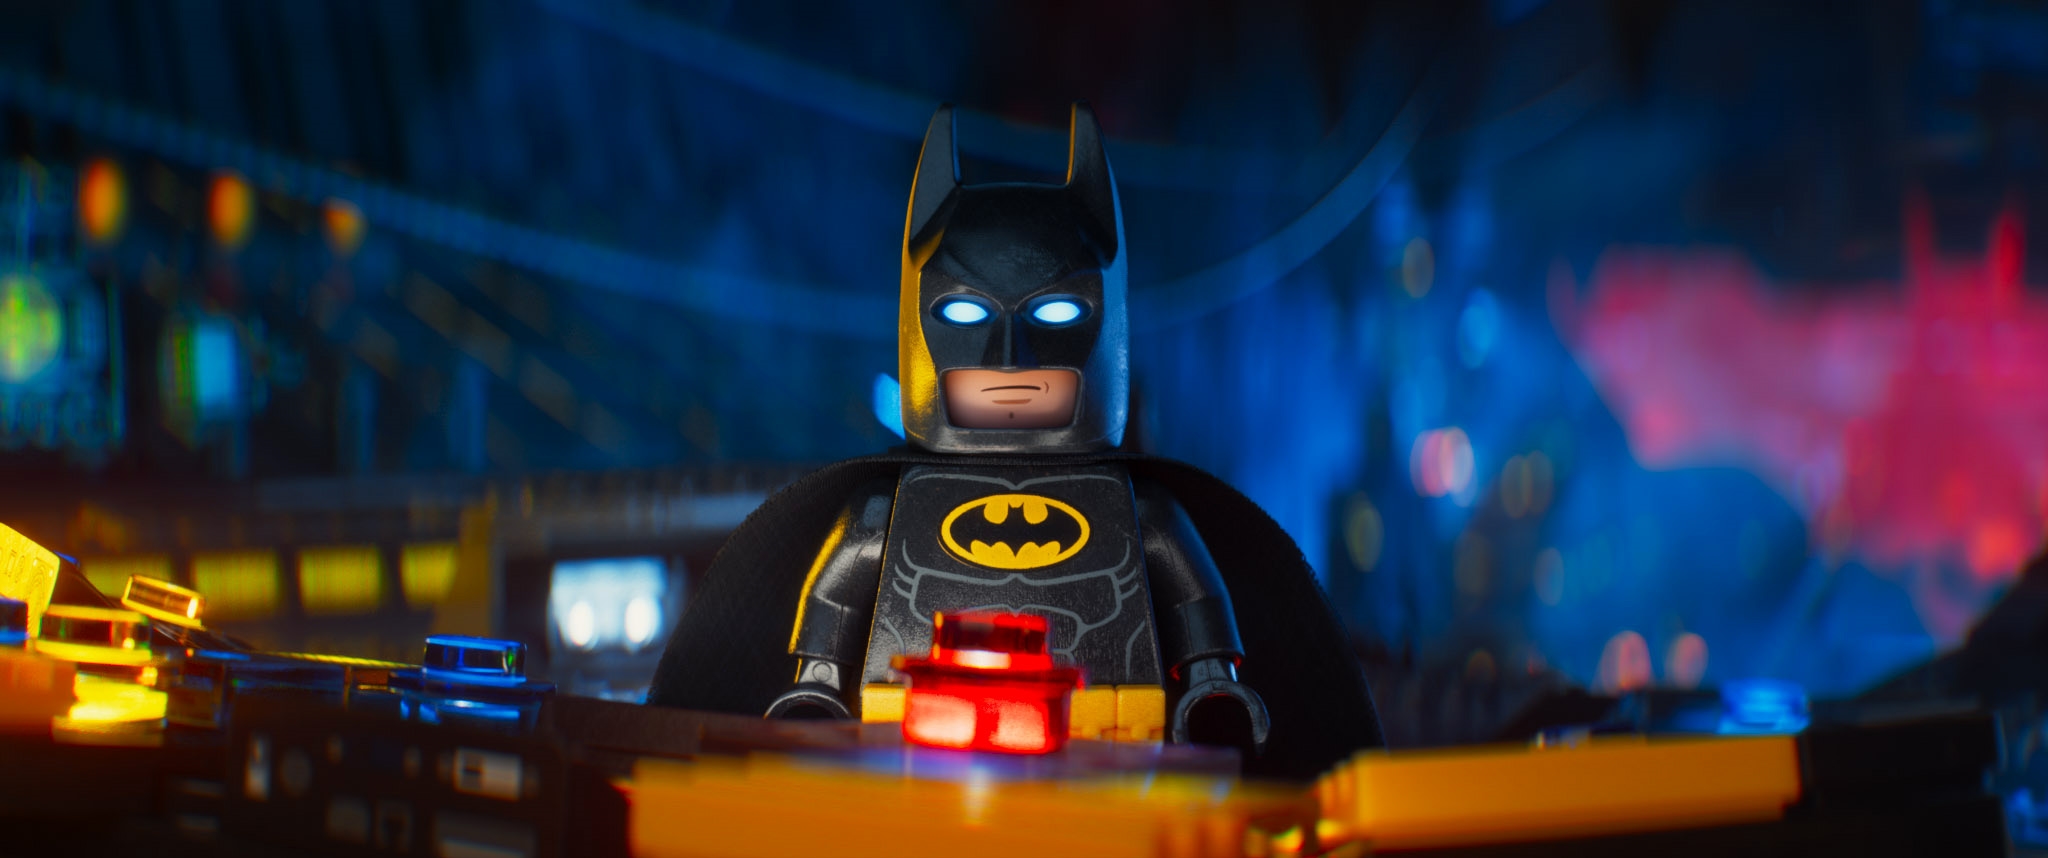 Image du film Lego Batman : le film 19c99125-d4e2-40de-9f2a-bc996499914d